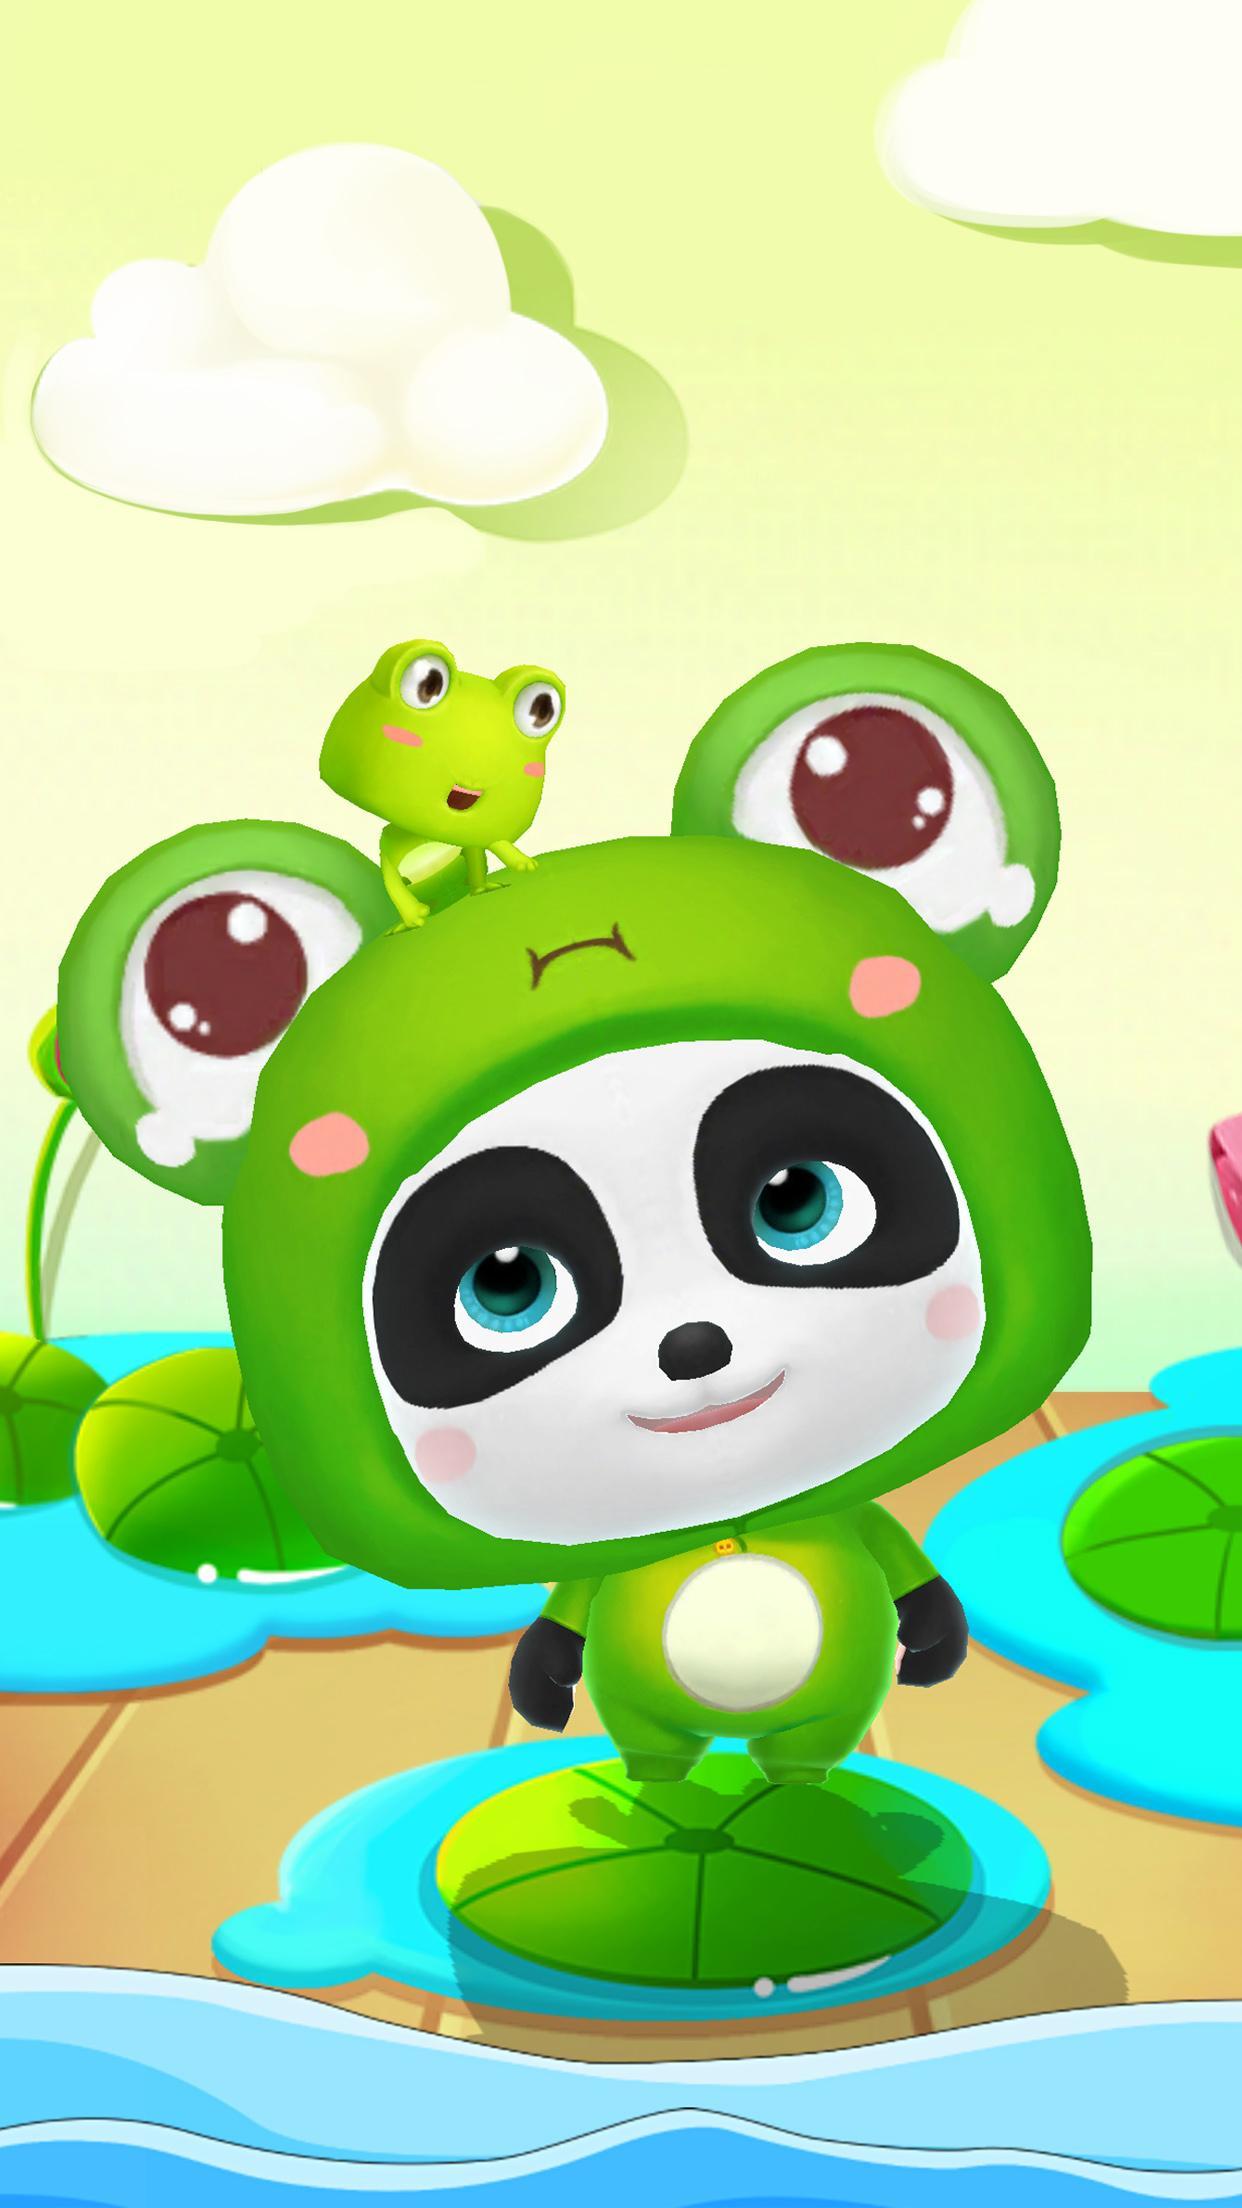 Talking Baby Panda - Kids Game 8.43.00.10 Screenshot 11